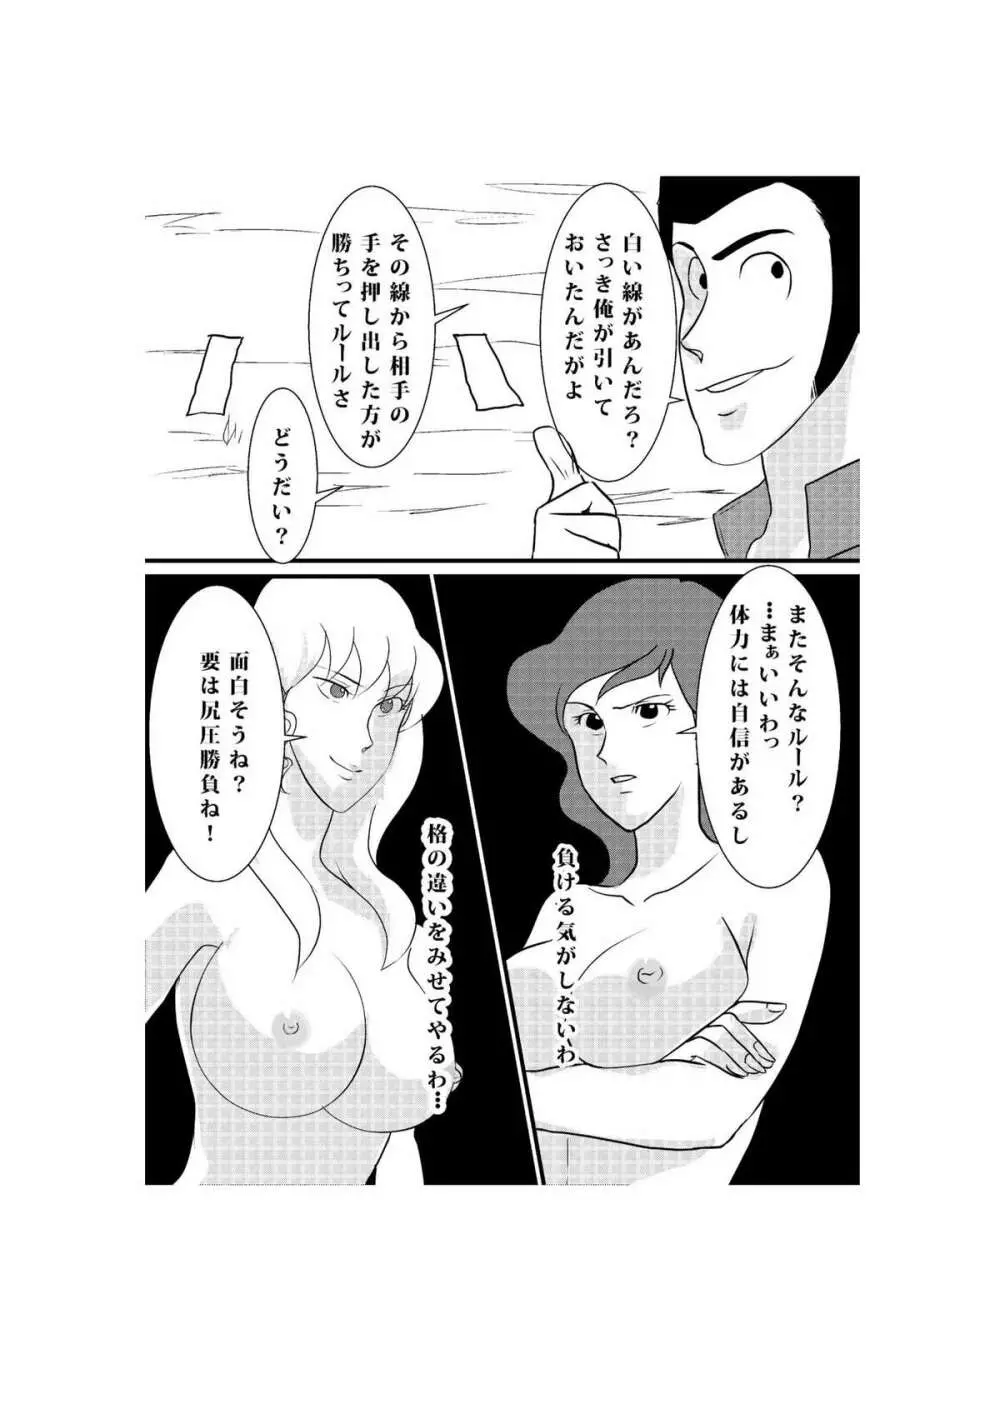 Fushi no Kyouten Ureta Onna no Tatakai - Fujiko VS Emmanuelle - page18